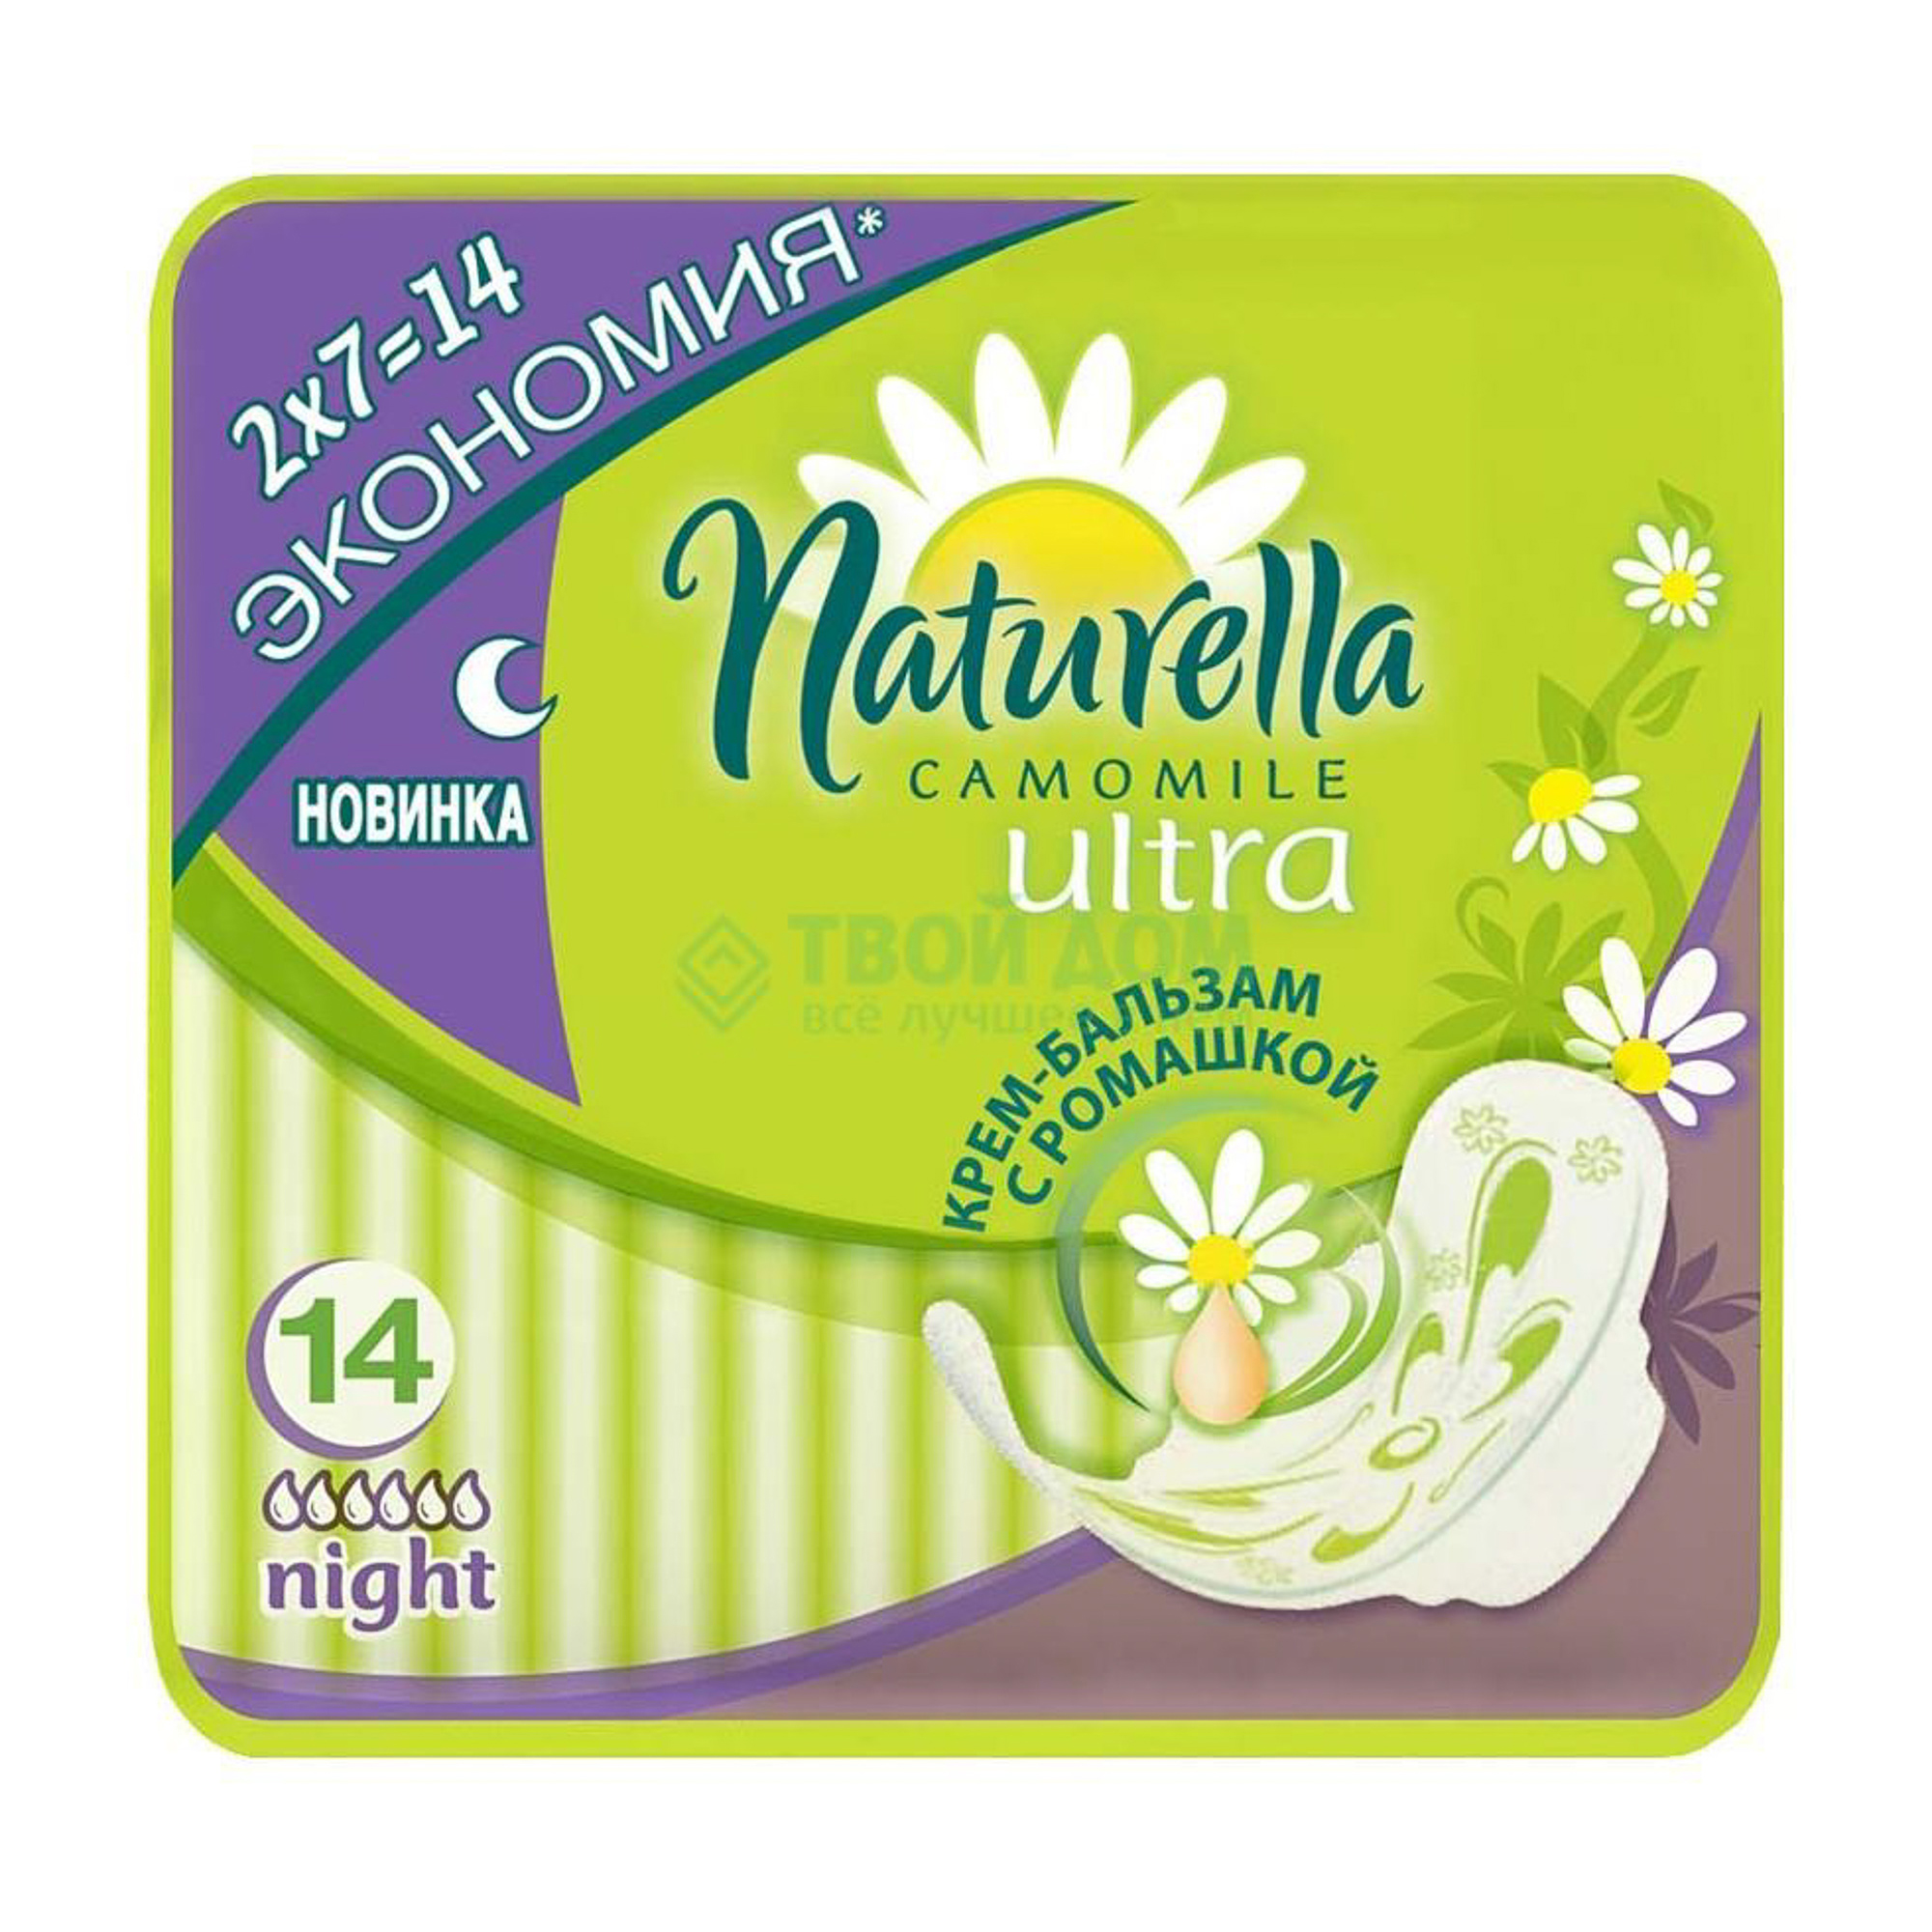 Женские гигиенические ароматизированные прокладки Naturella Ultra Night с ароматом ромашки Duo, 14 шт